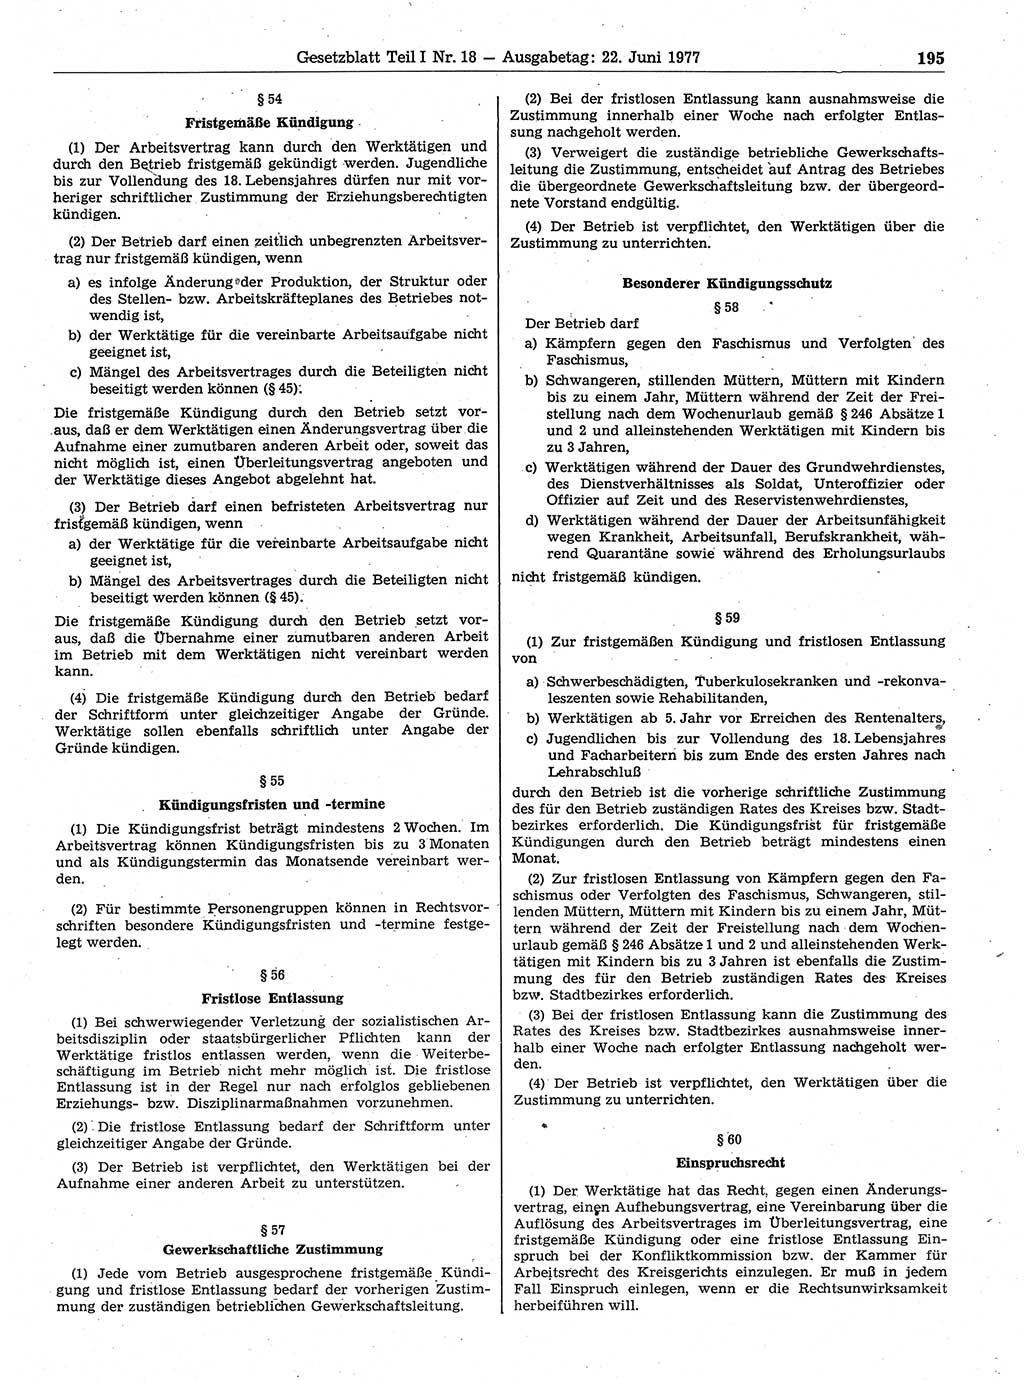 Gesetzblatt (GBl.) der Deutschen Demokratischen Republik (DDR) Teil Ⅰ 1977, Seite 195 (GBl. DDR Ⅰ 1977, S. 195)